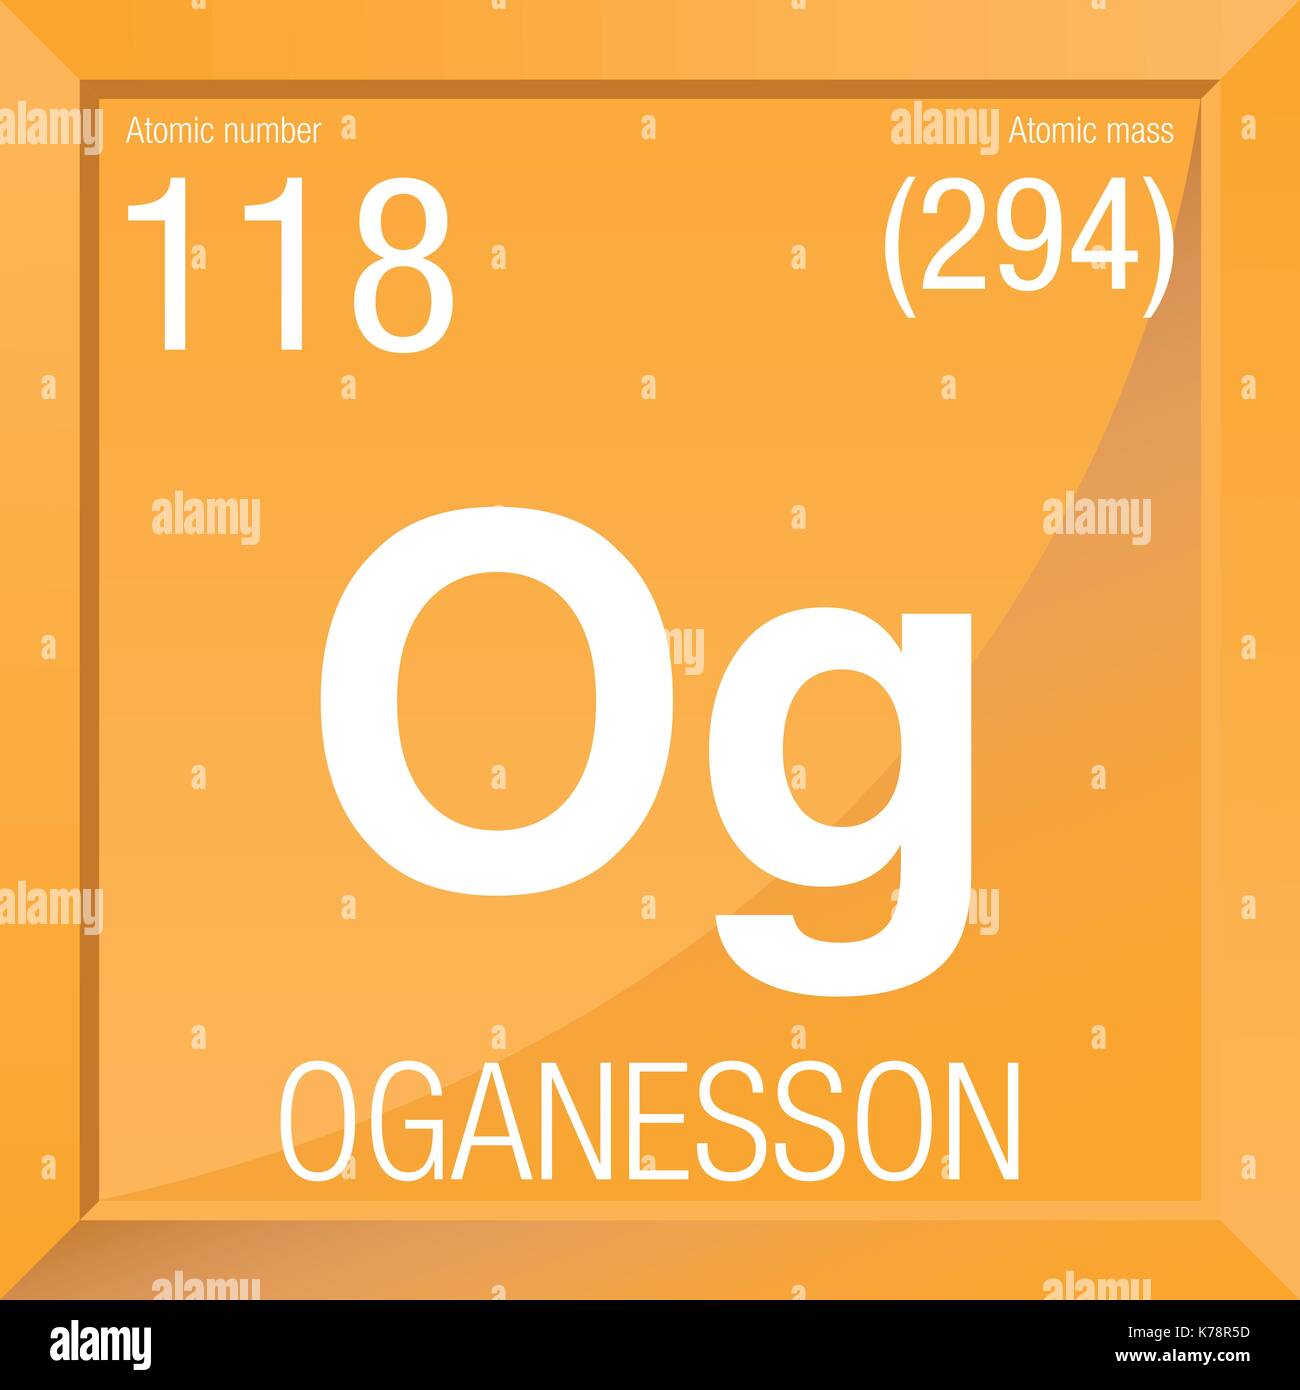 El oganesson, el elemento más pesado de la tabla periódica, tiene una  estructura externa inusual - Rincón educativo